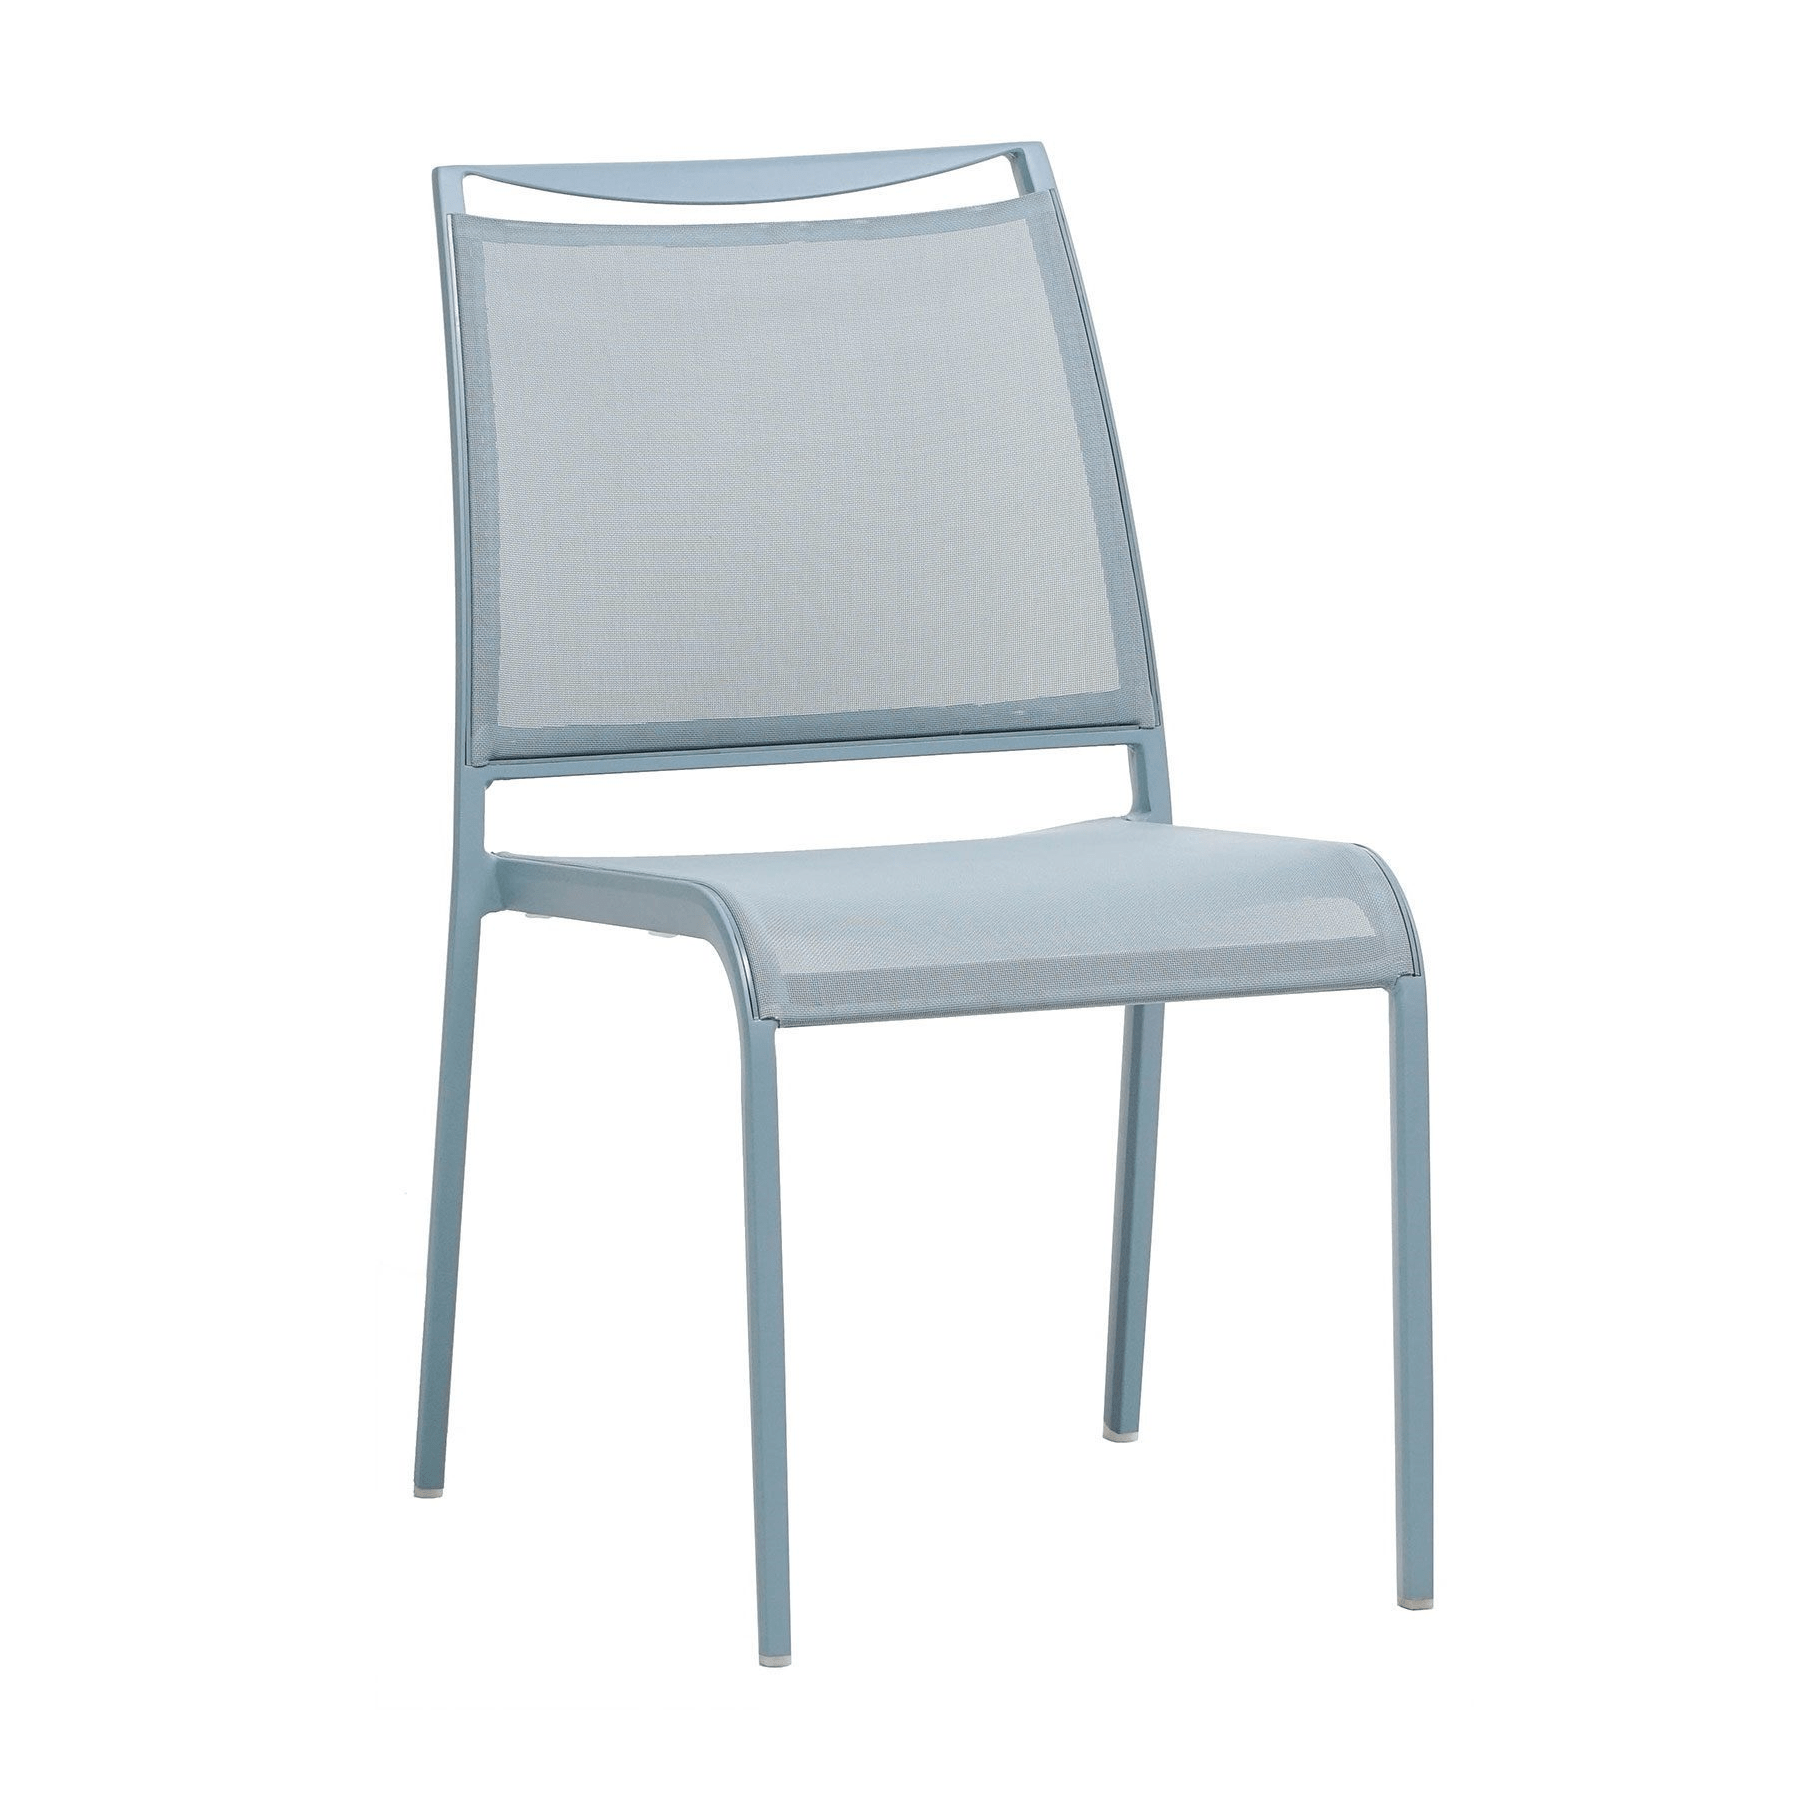 Ratana Furniture - Dining Ratana Como Dining Side Chair